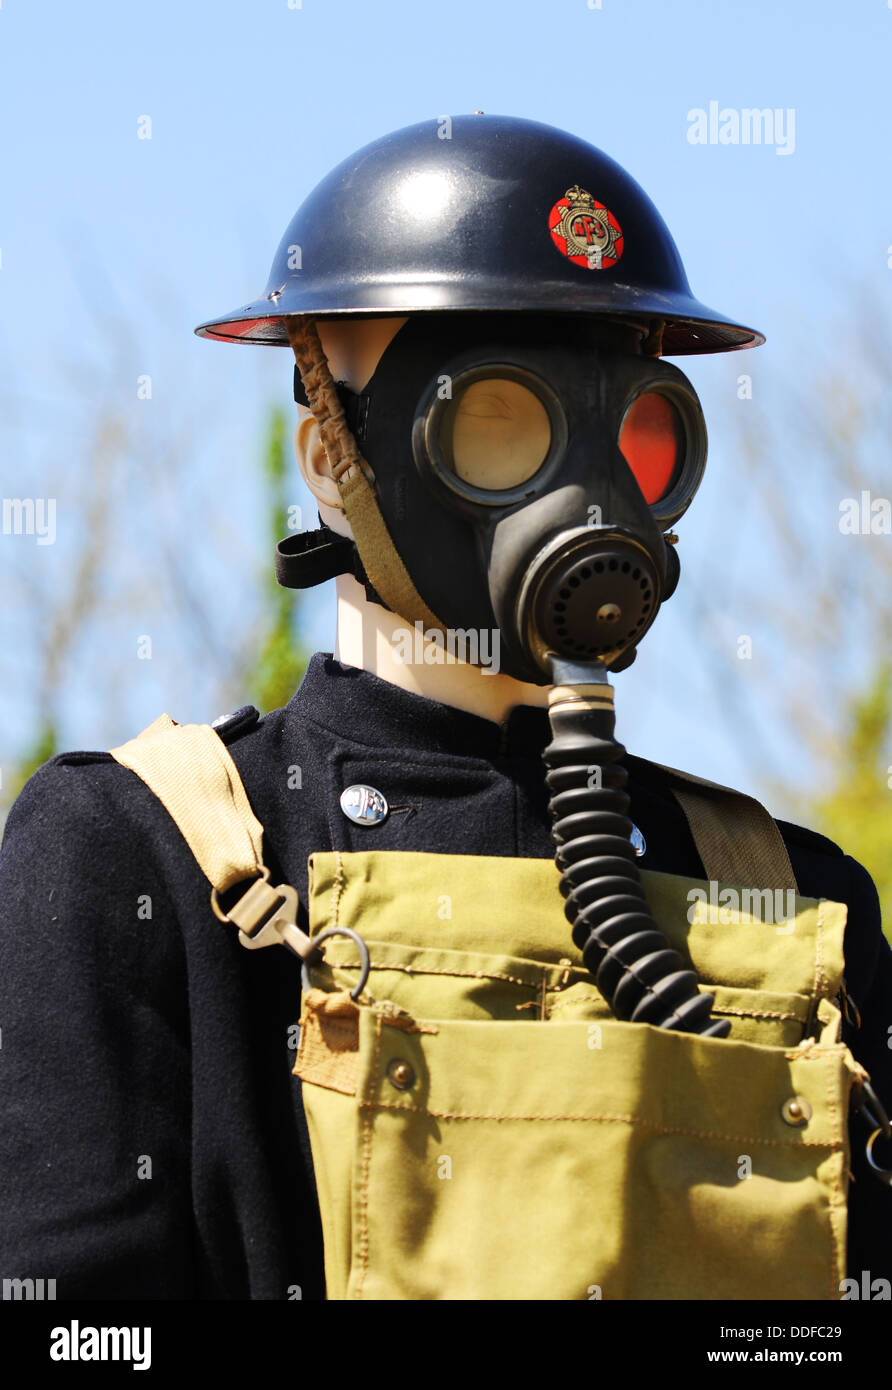 National Fire Service, NFS, World War 2 uniform and gas mask Stock Photo